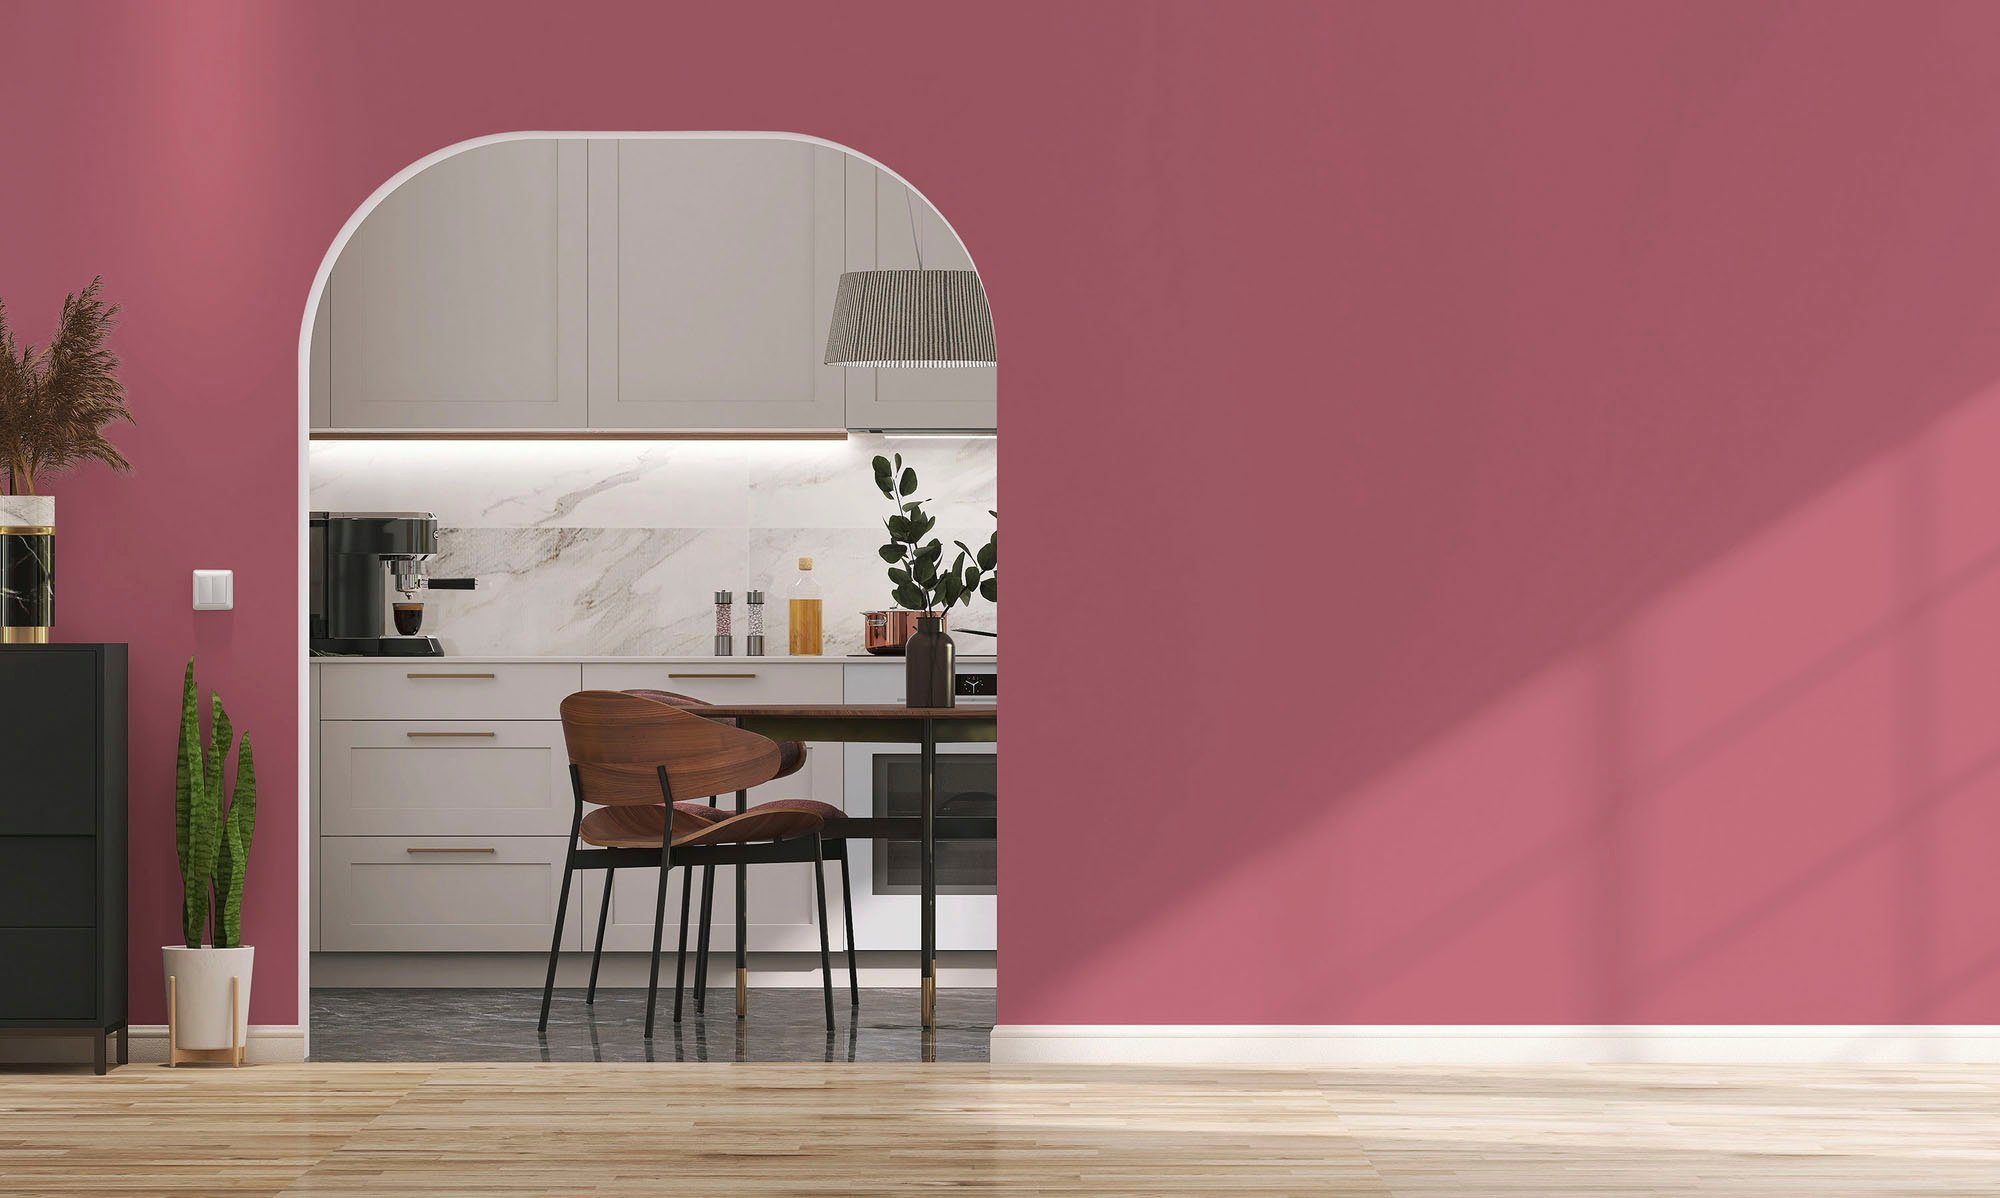 Flur Innenwandfarbe Premium Schlafzimmer, peachy peachy pink, Wandfarbe ideal Küche, Wohnzimmer, für A.S. Création Tuchmatt c2032 Farbwelt pink PURO und Pink